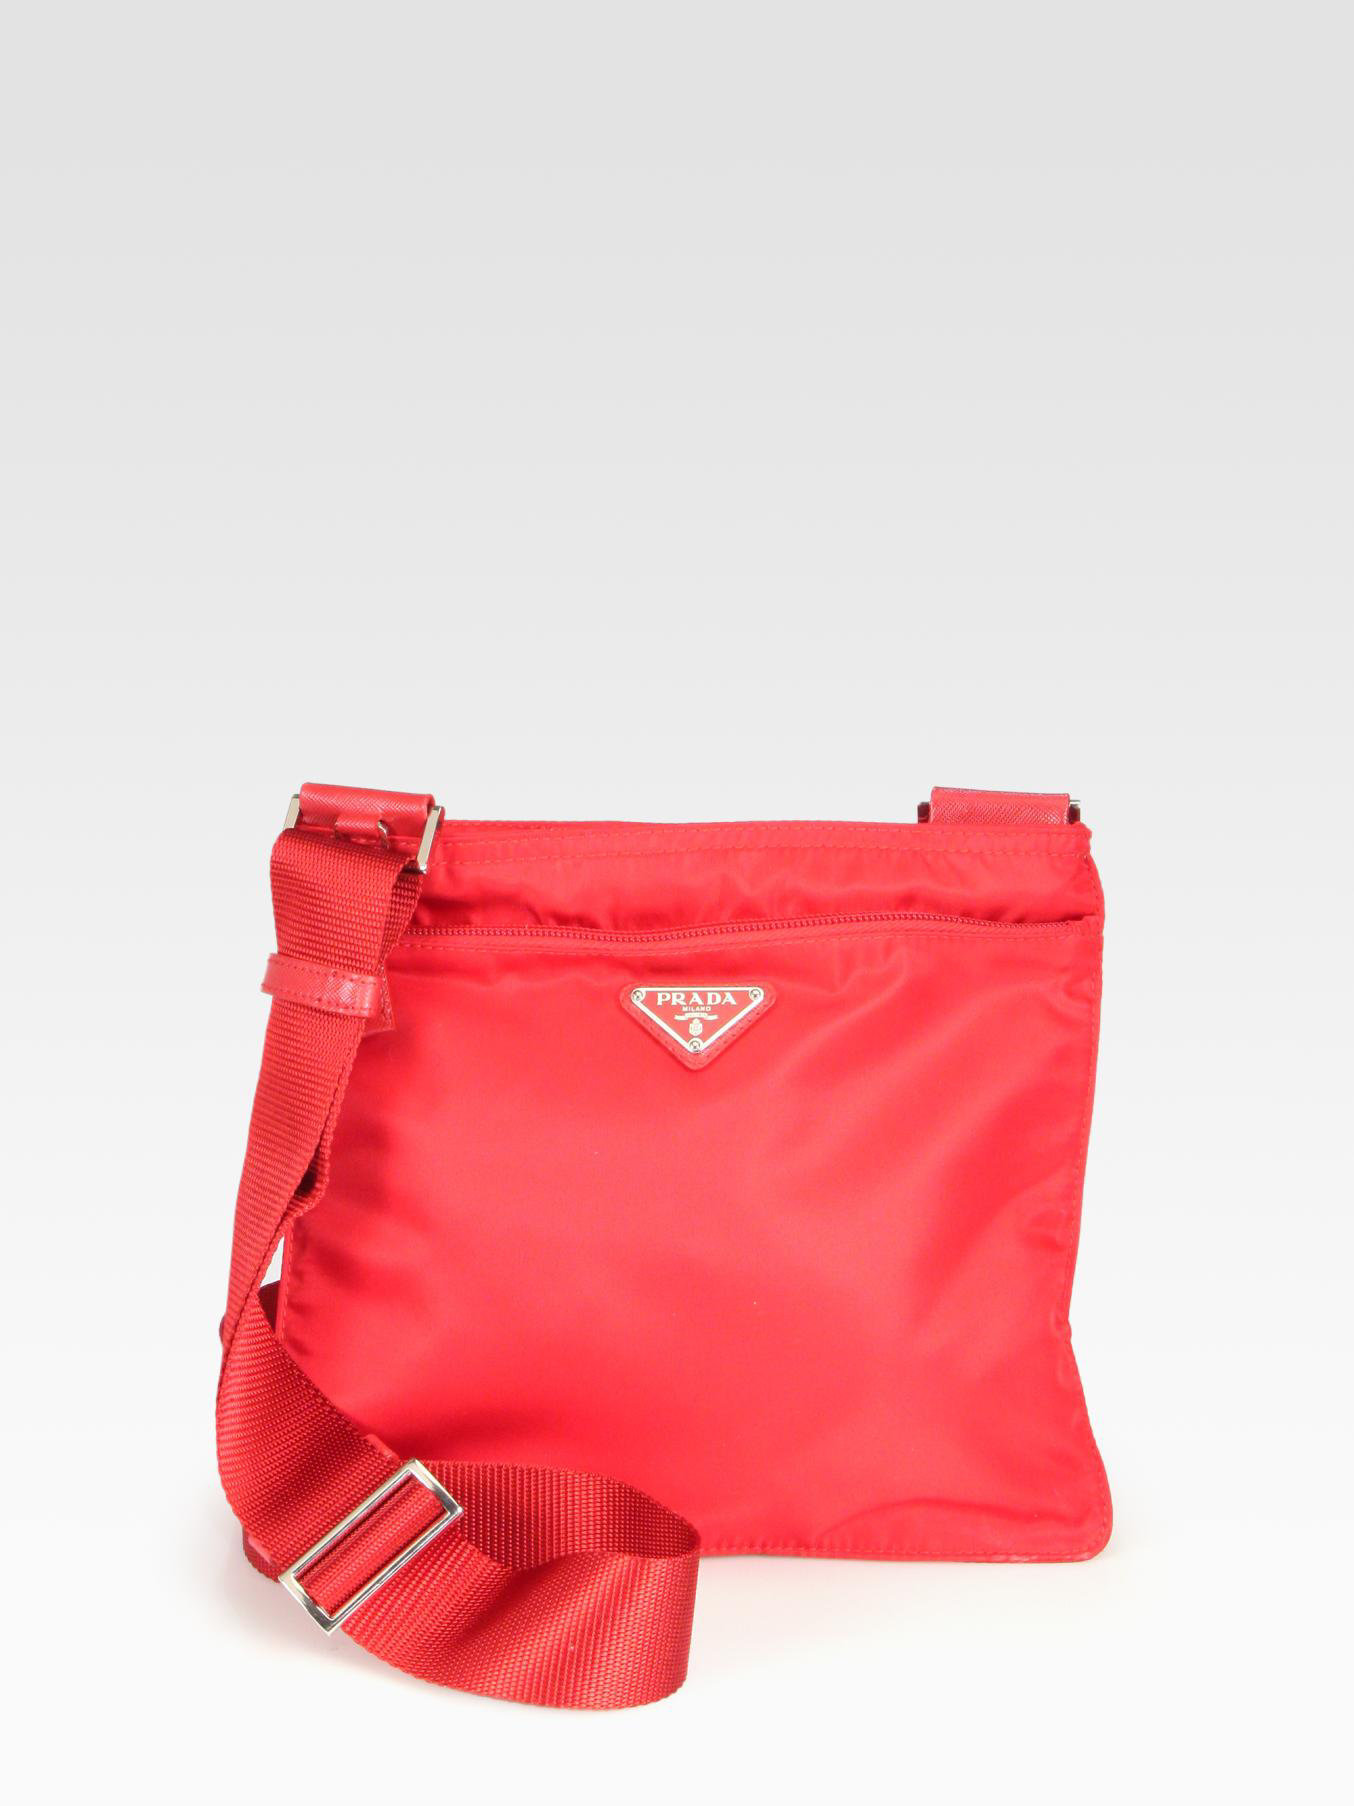 Prada Nylon Messenger Bag in Red | Lyst  